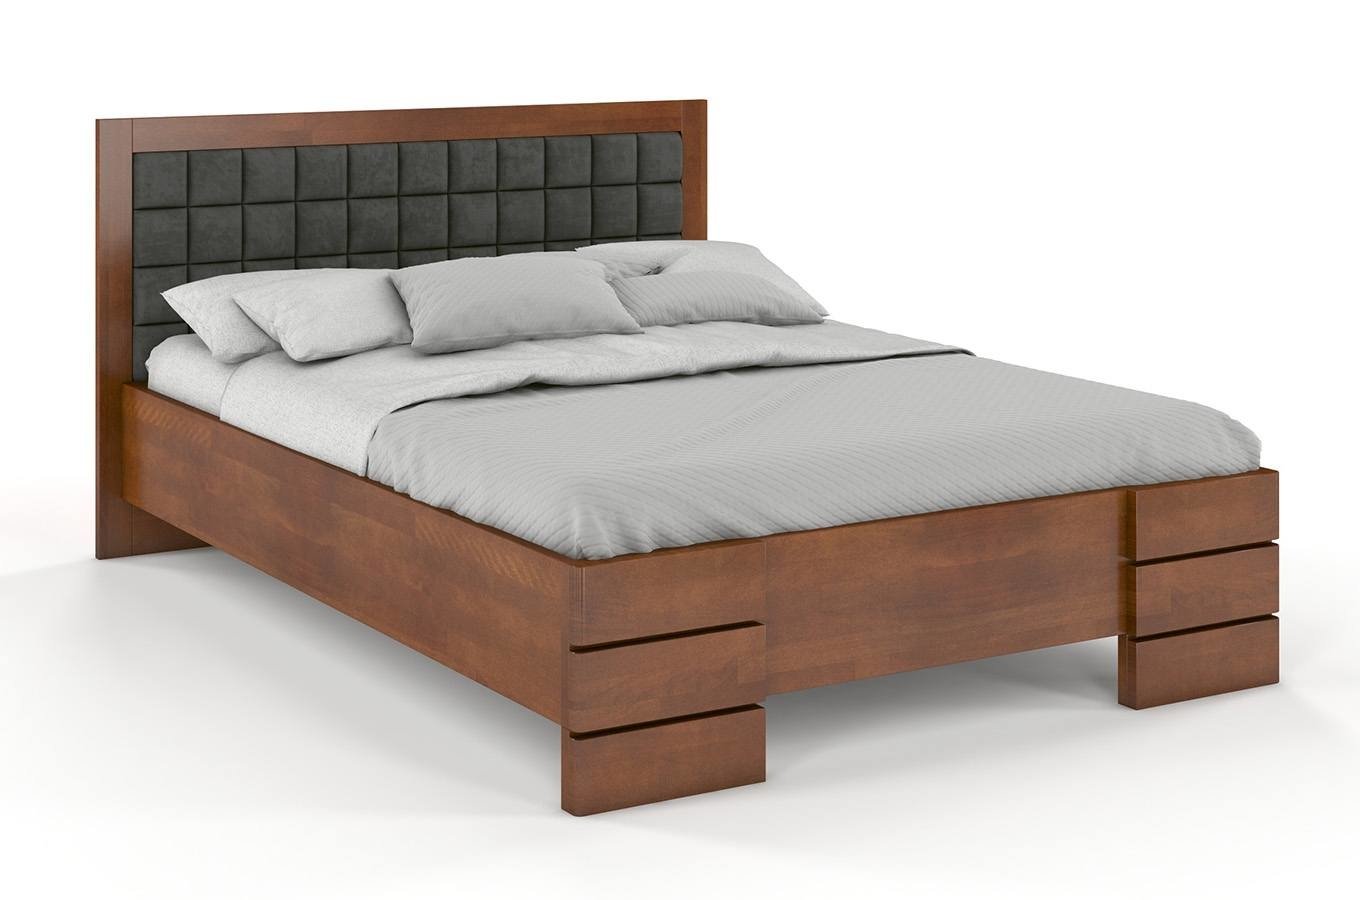 Buková postel Gotland High čalounění a úložný prostor - ořech 120 x 200 cm, Casablanca 2314